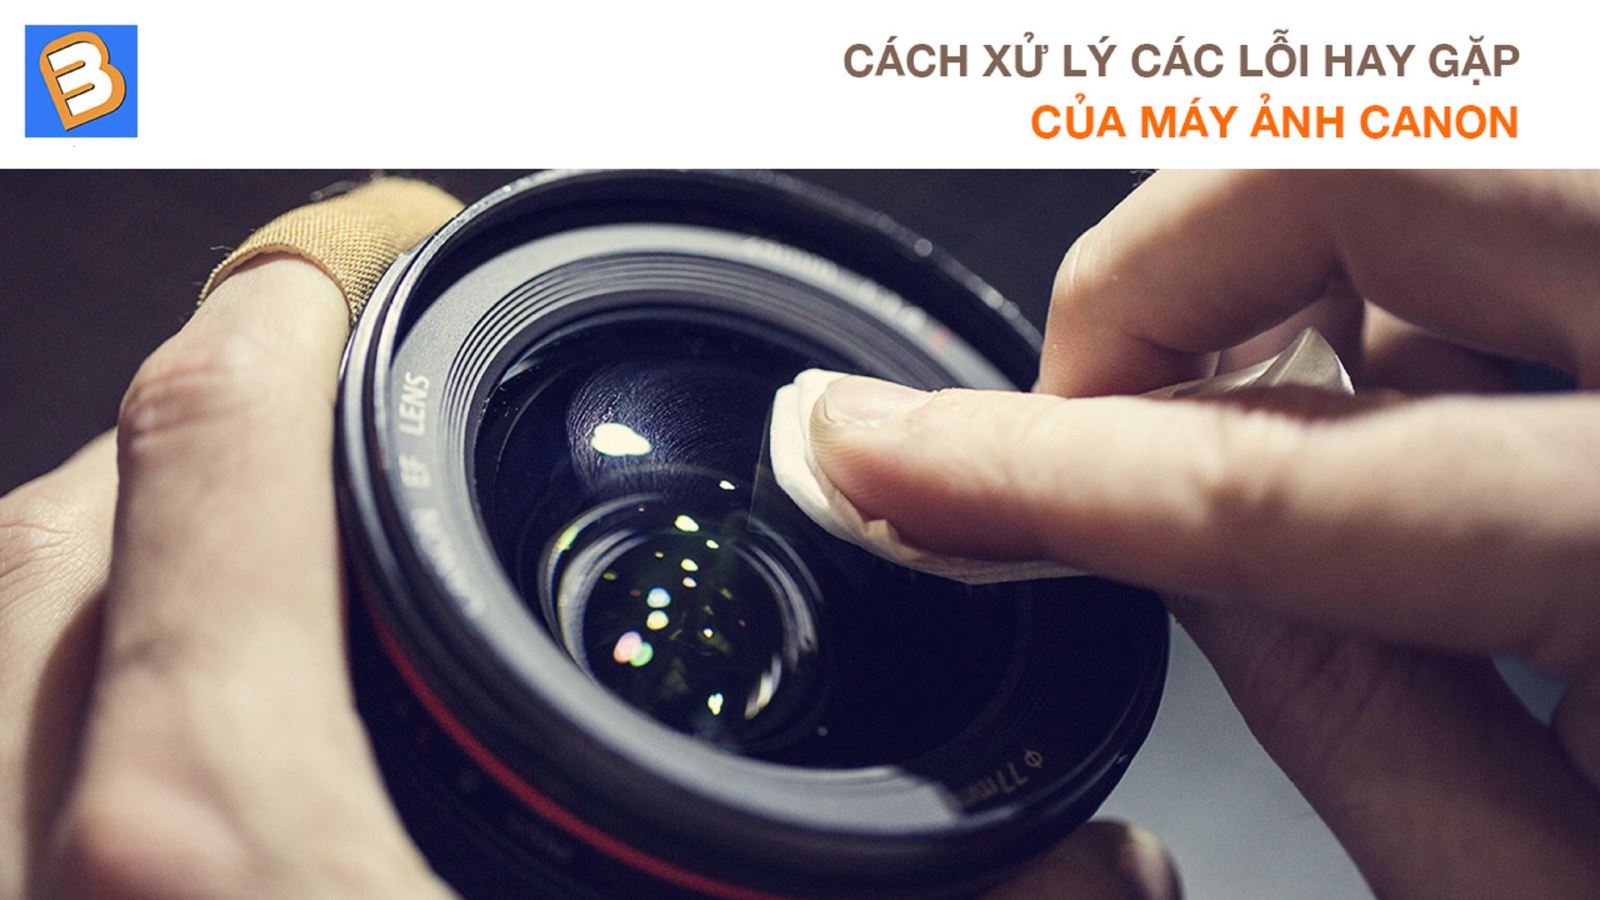 Cách xử lý các lỗi hay gặp của máy ảnh Canon